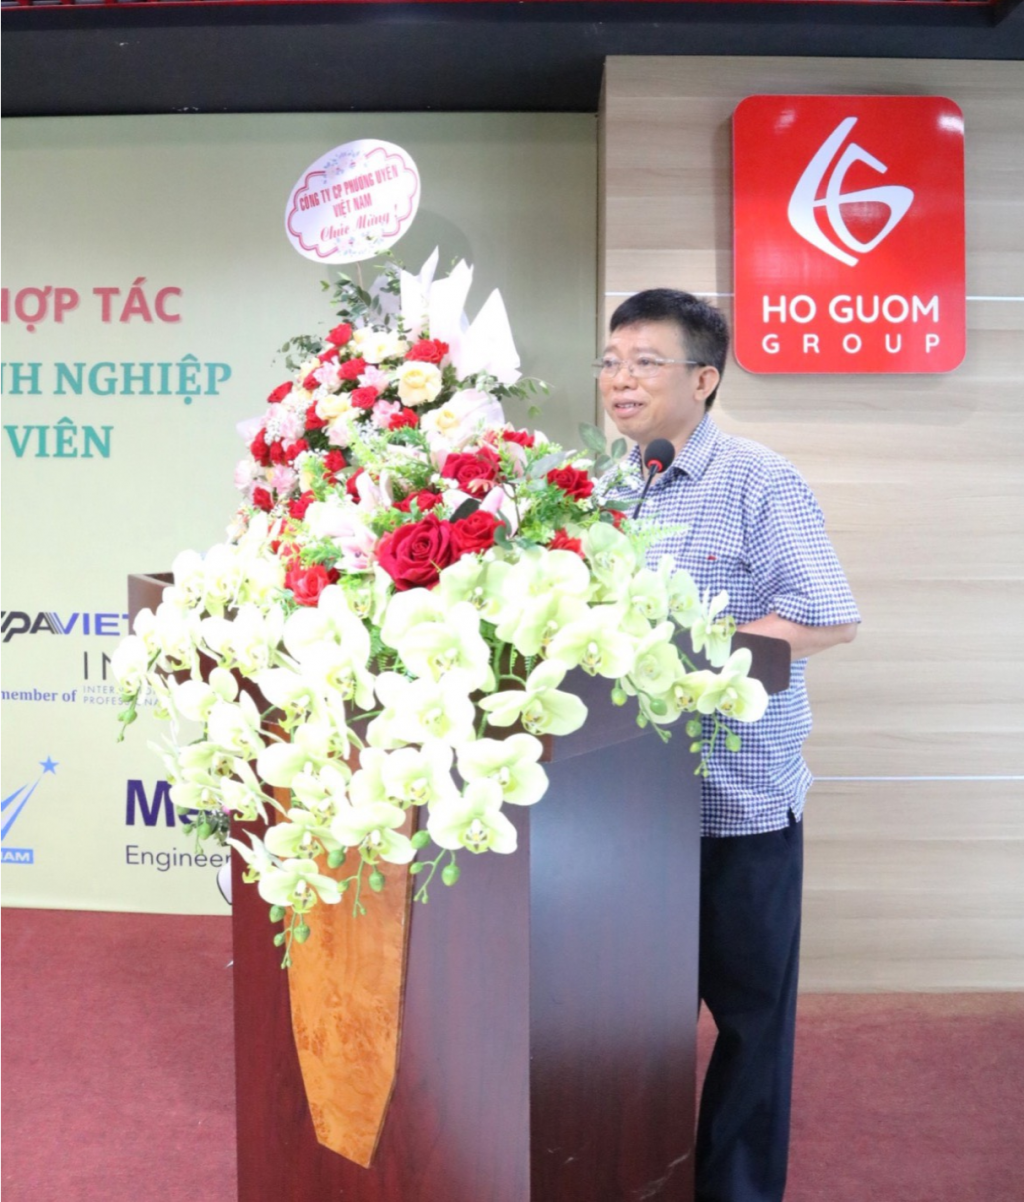   Tiến sỹ Đặng Văn Hải – Phó Vụ trưởng Kiểm toán Nhà Nước tham dự và phát biểu về mô hình đào tạo gắn kết giữa nhà trường và doanh nghiệp